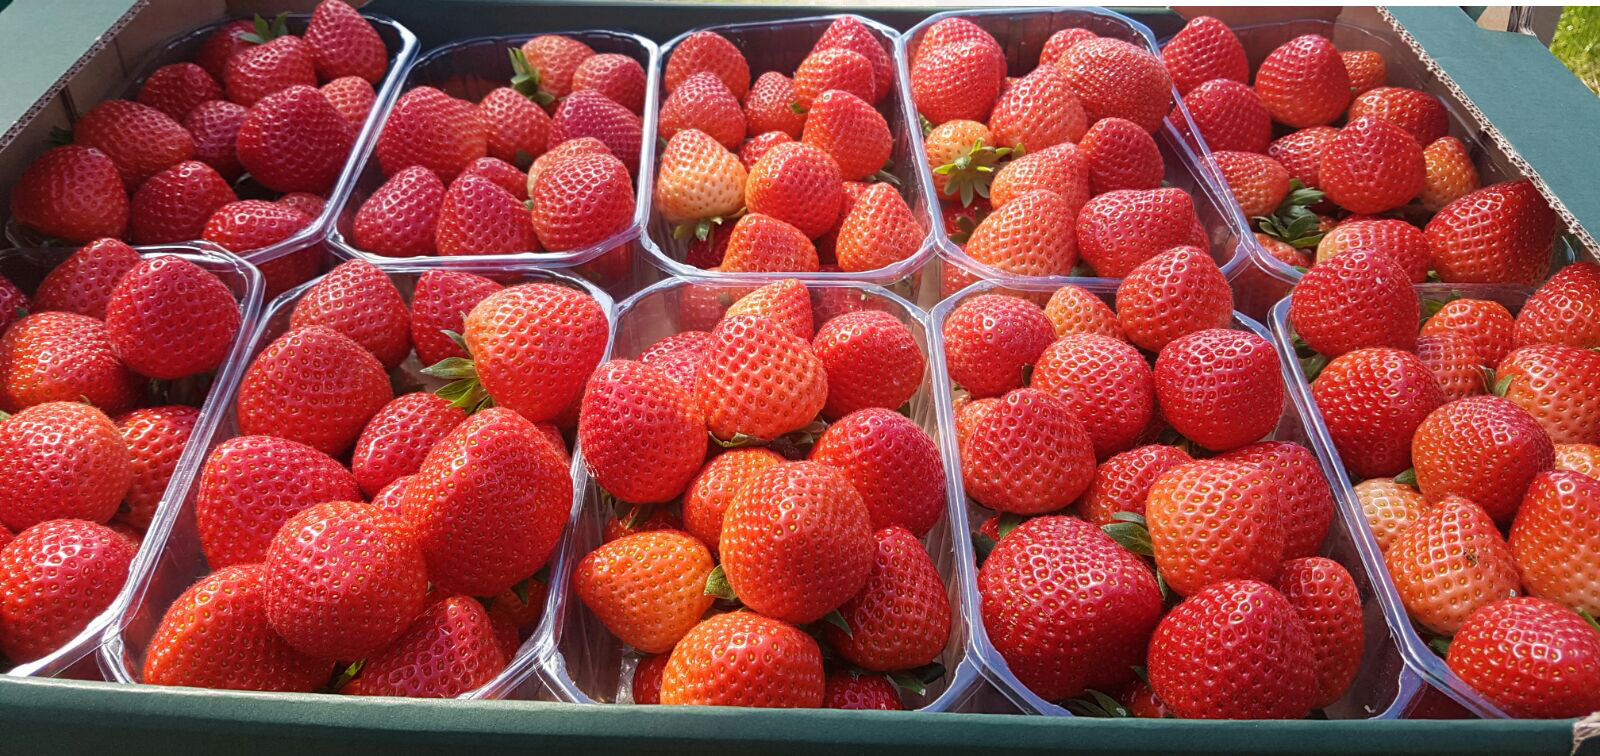 Strawberry frukt - bästa pris